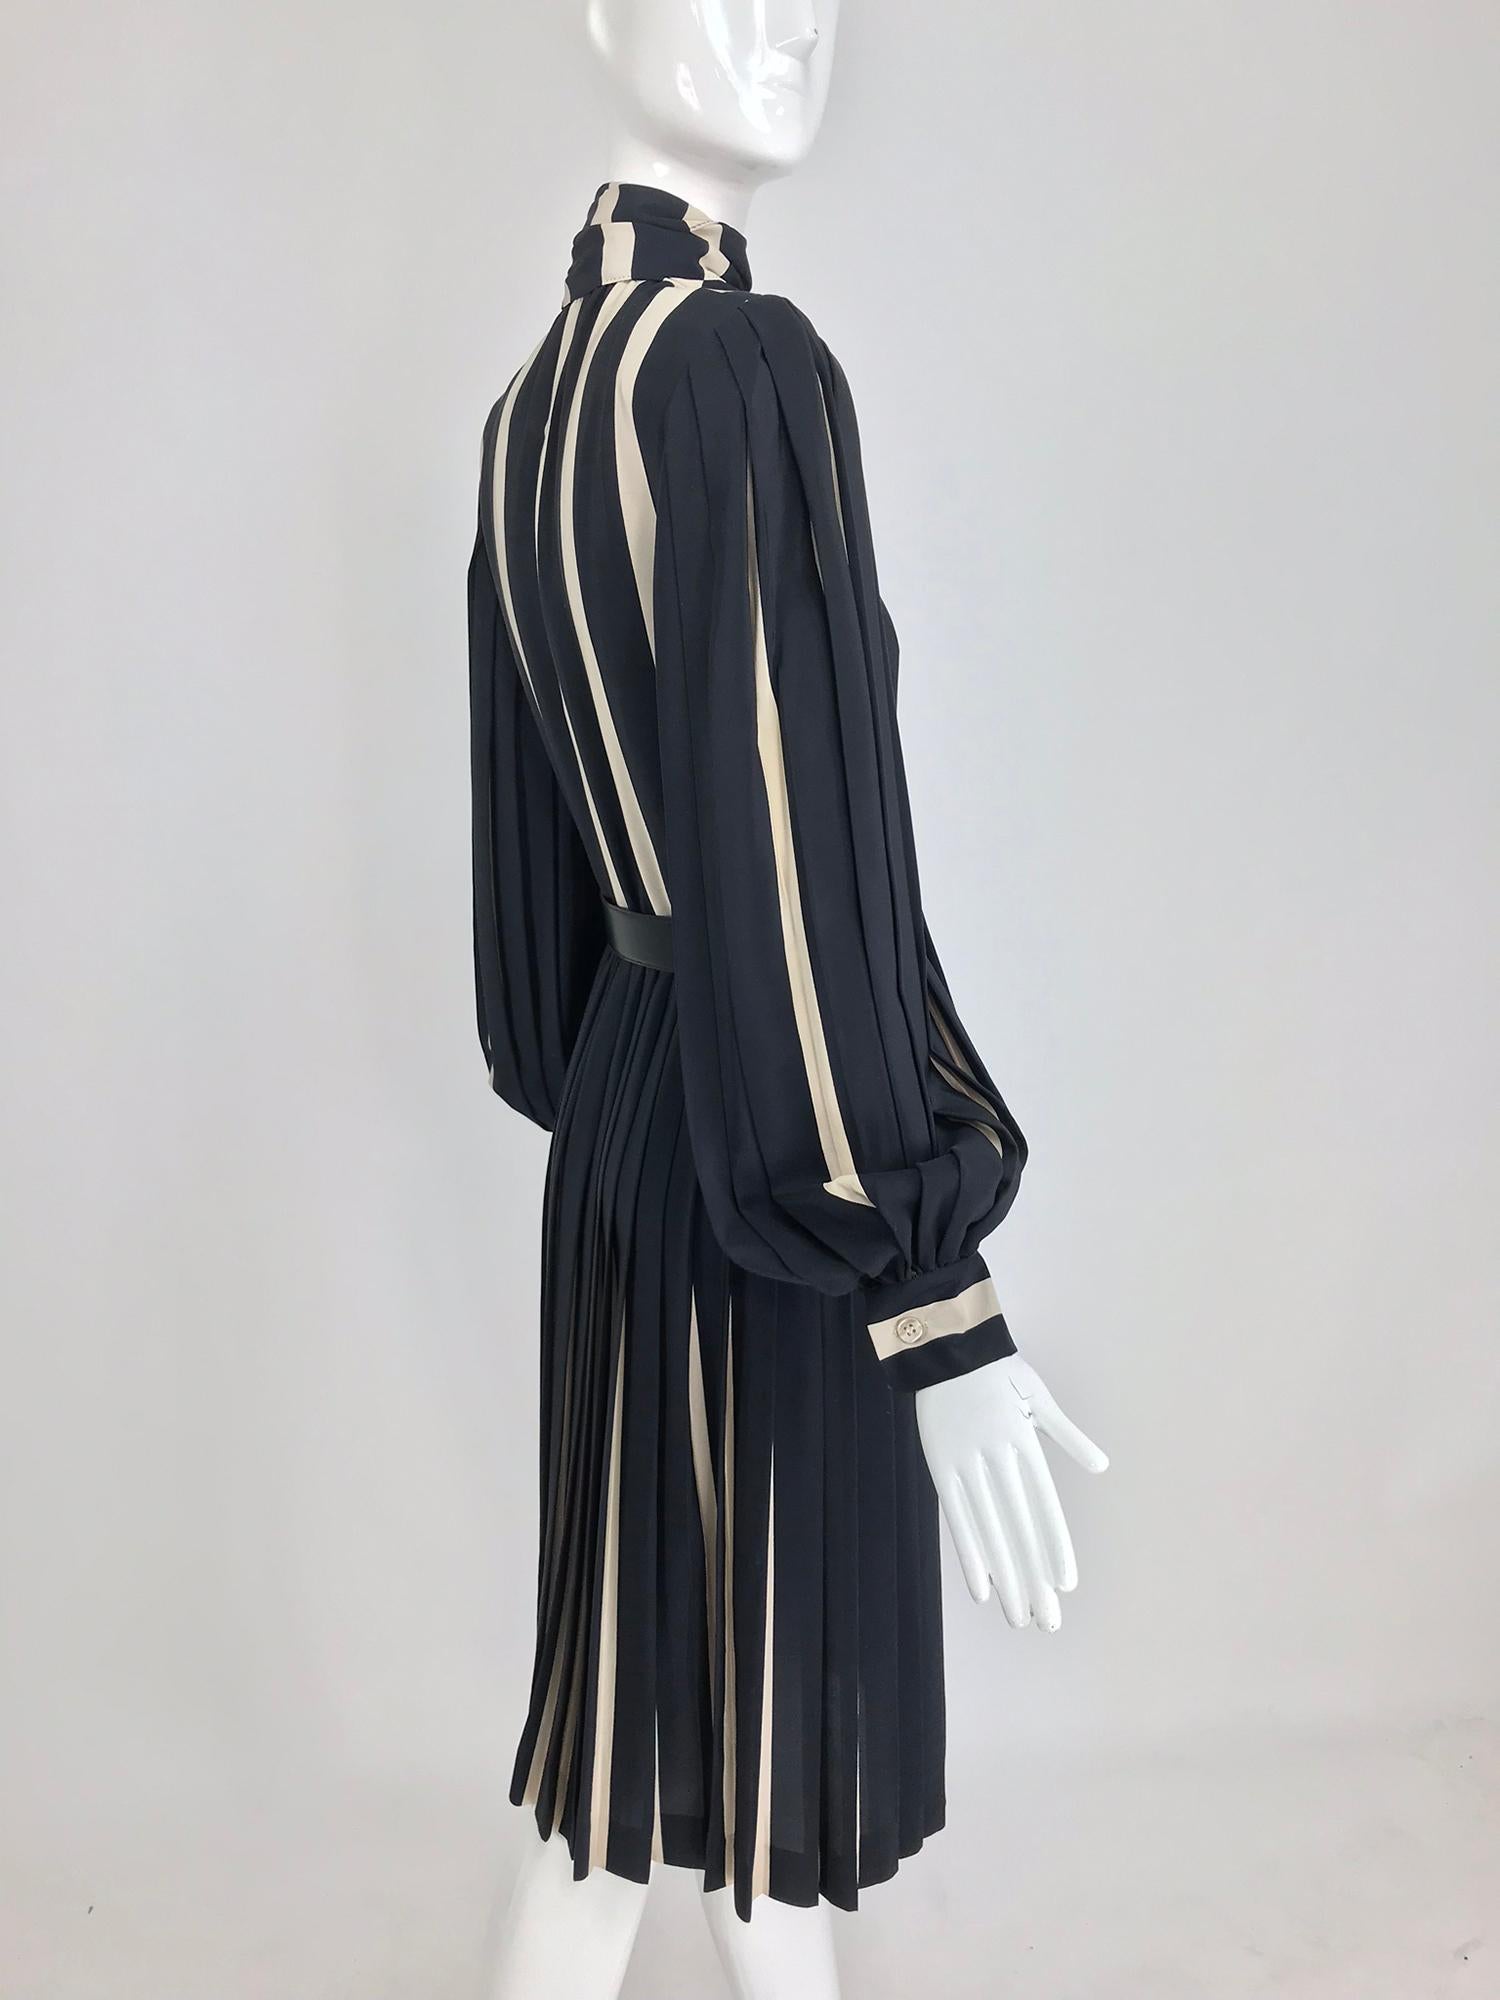 Women's Bill Blass pleated silk black and tan stripe dress 1970s